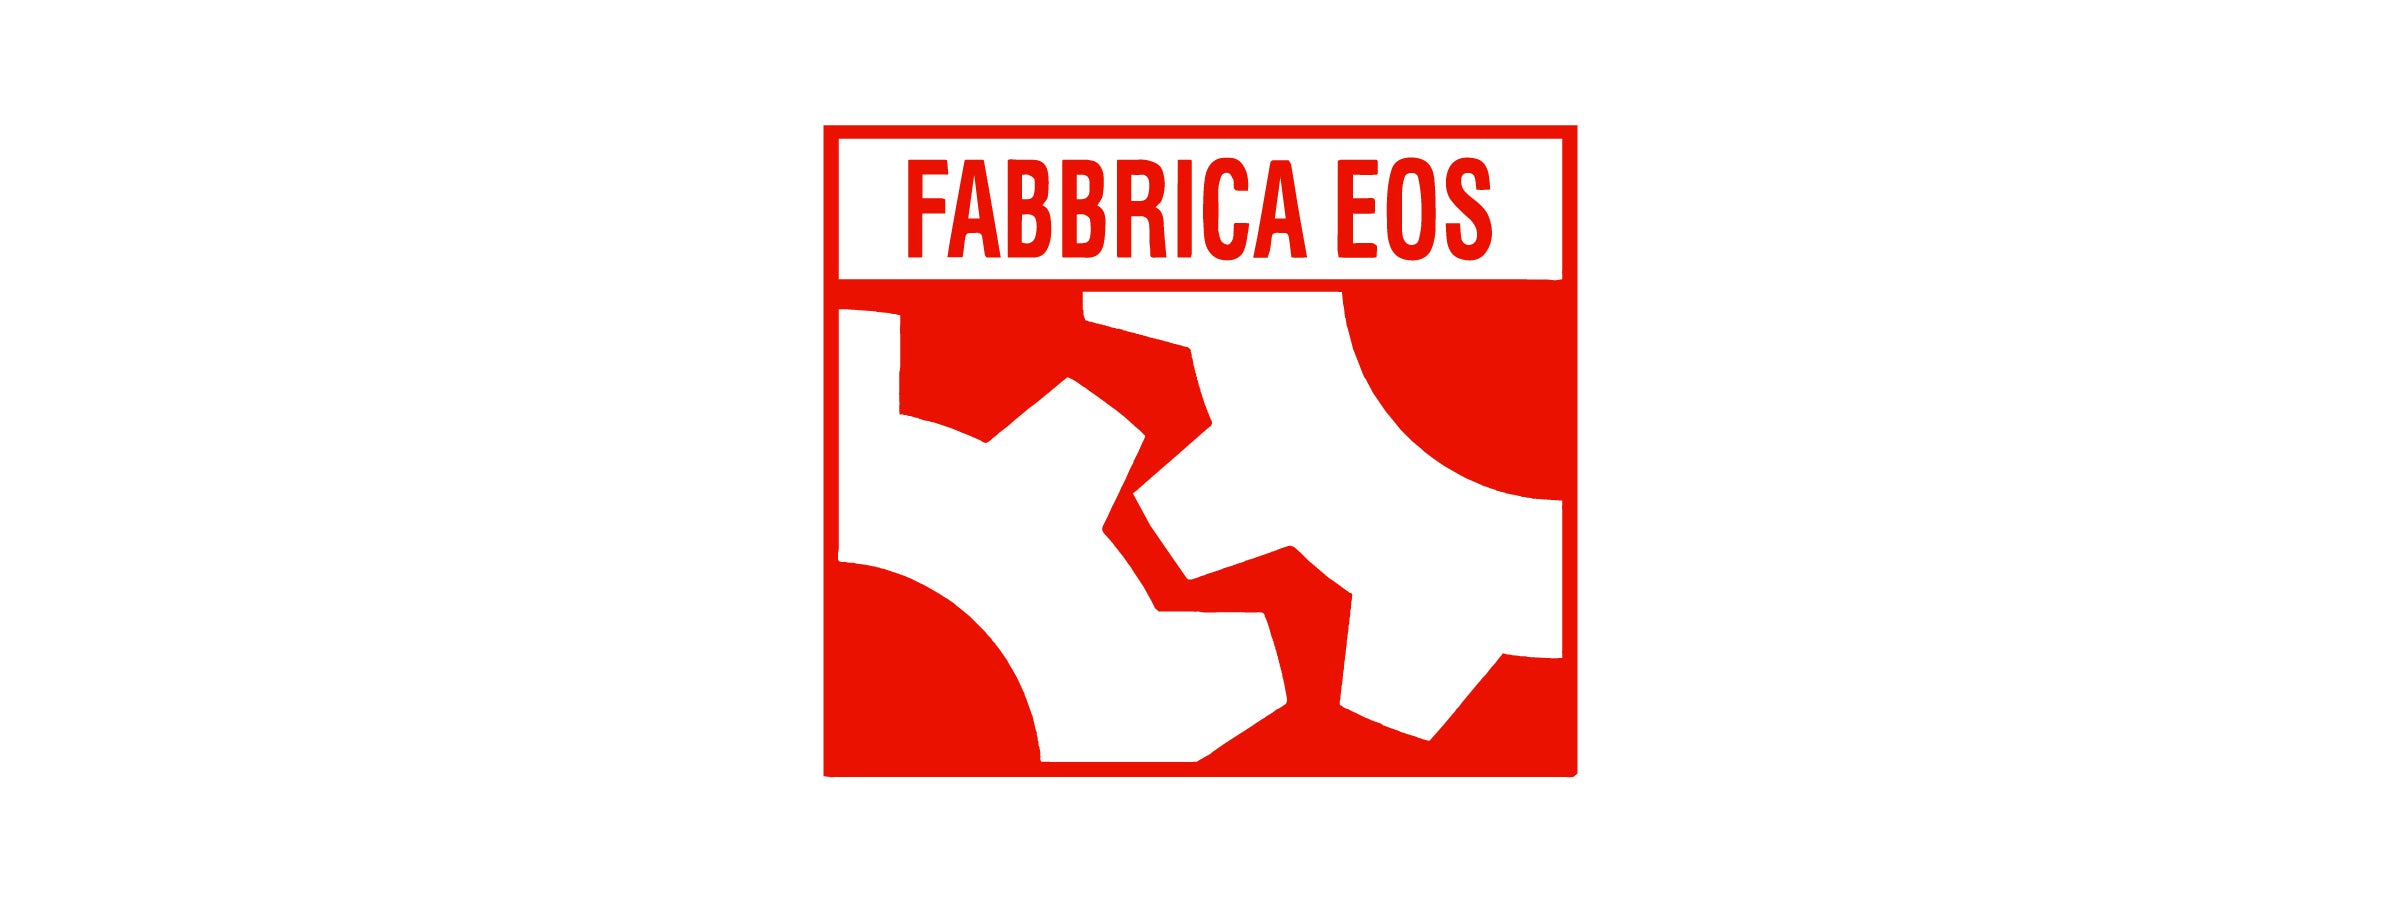 Fabbrica Eos - Design Italy